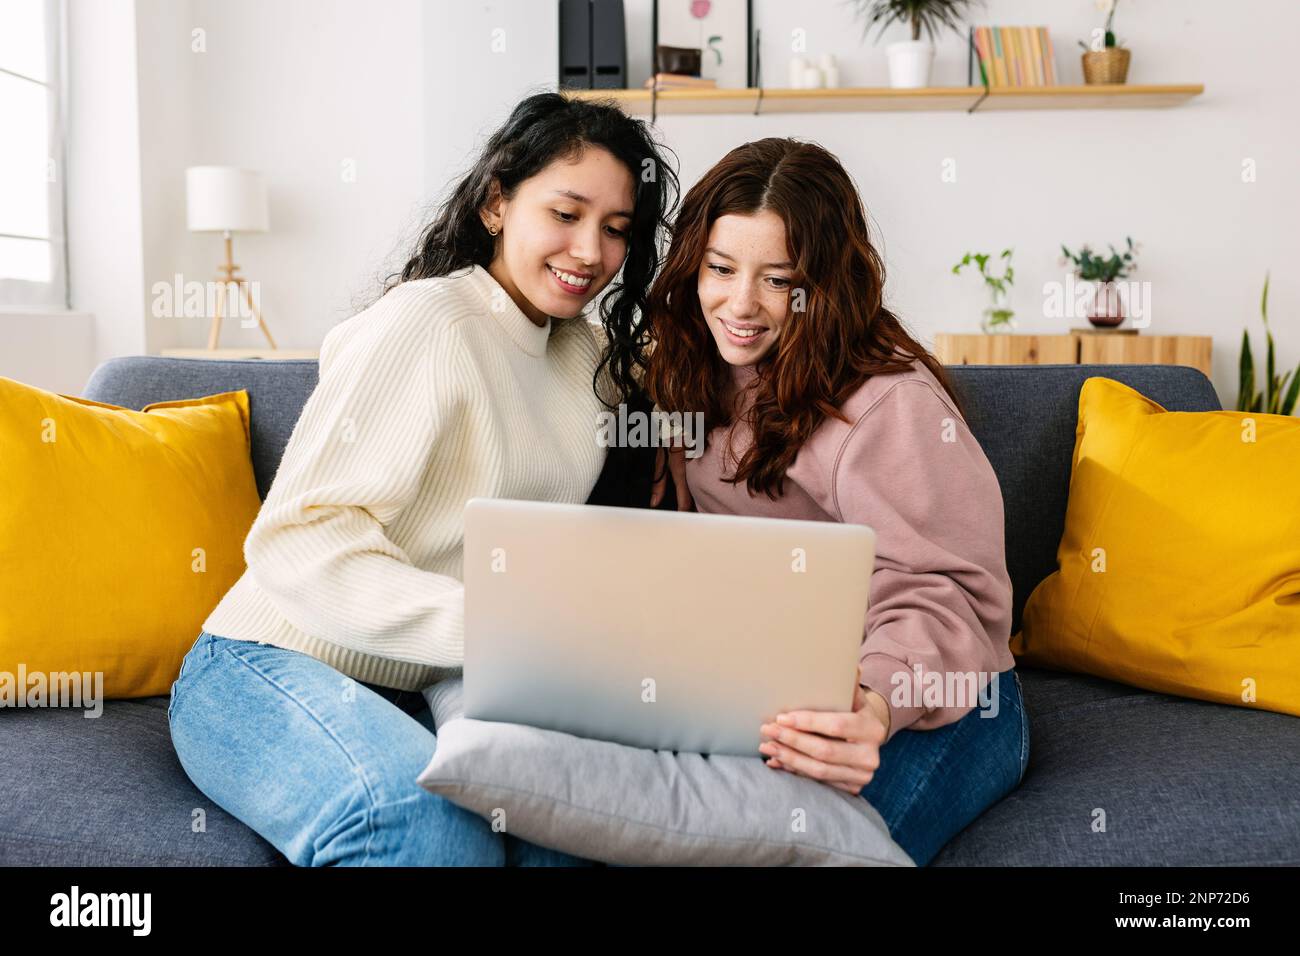 Glückliche studentin aus lateinamerika, die zu Hause auf dem Sofa mit einem Laptop sitzt Stockfoto